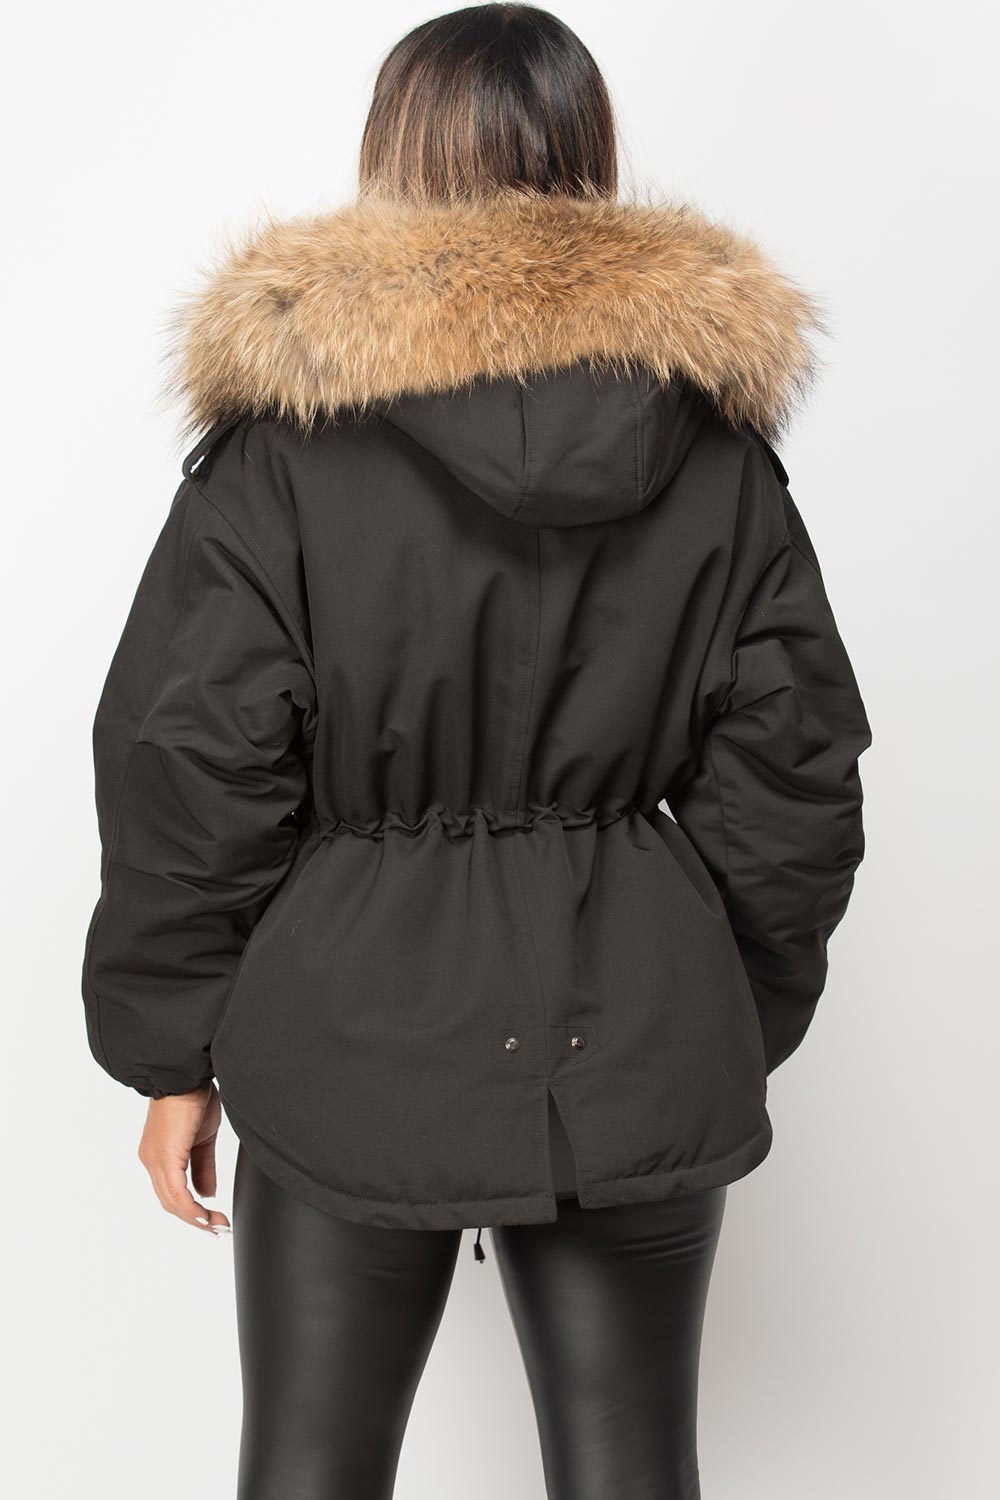 big natural fur hooded parka jacket black 